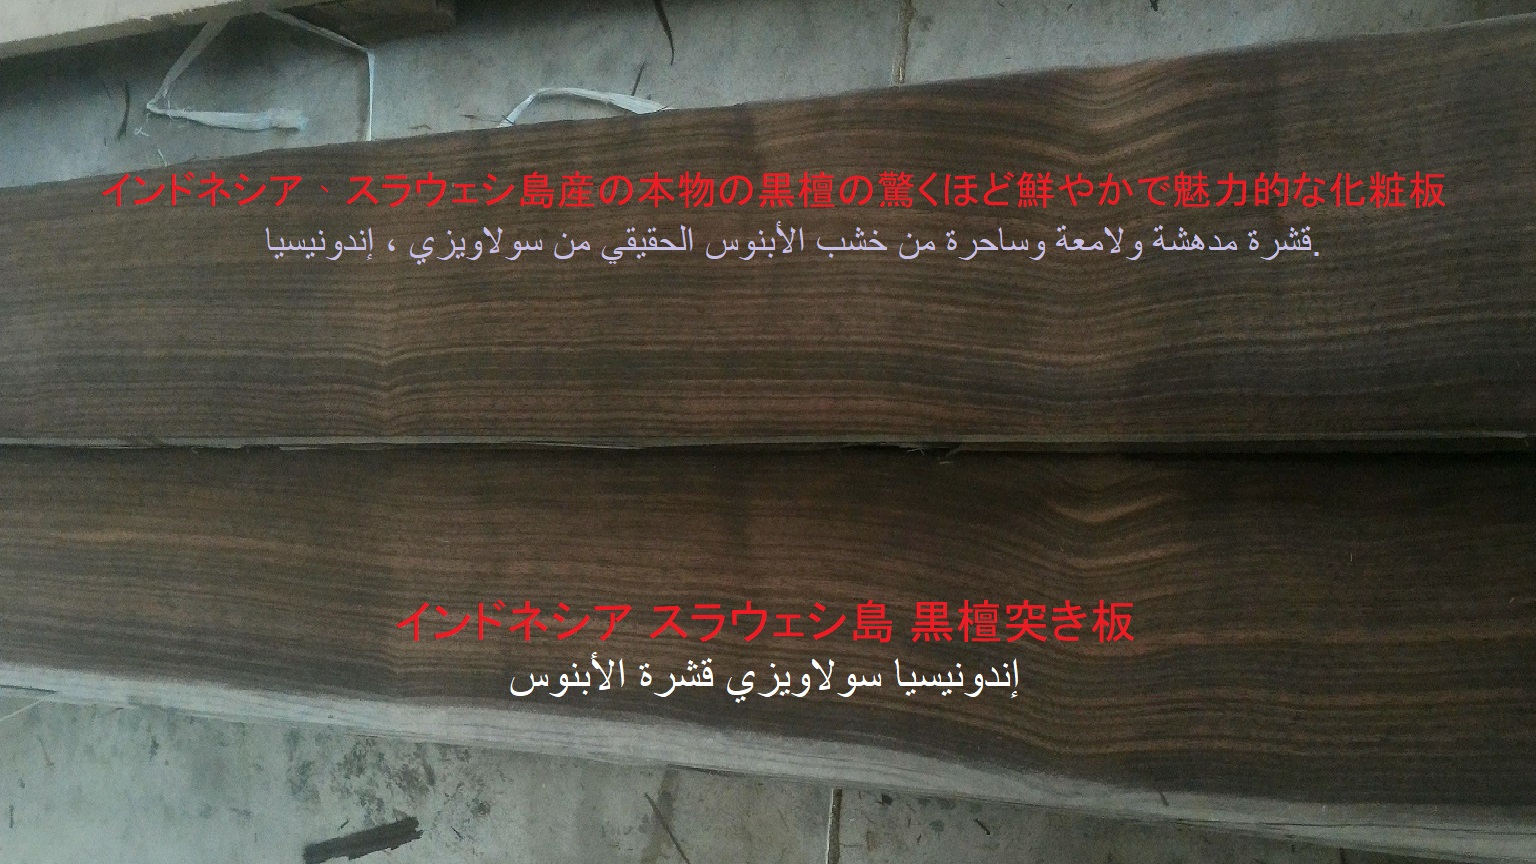 Ván lạng gỗ mun - Ván Gỗ Phúc Liên Mộc Nghiệp - Công Ty TNHH Phúc Liên Mộc Nghiệp